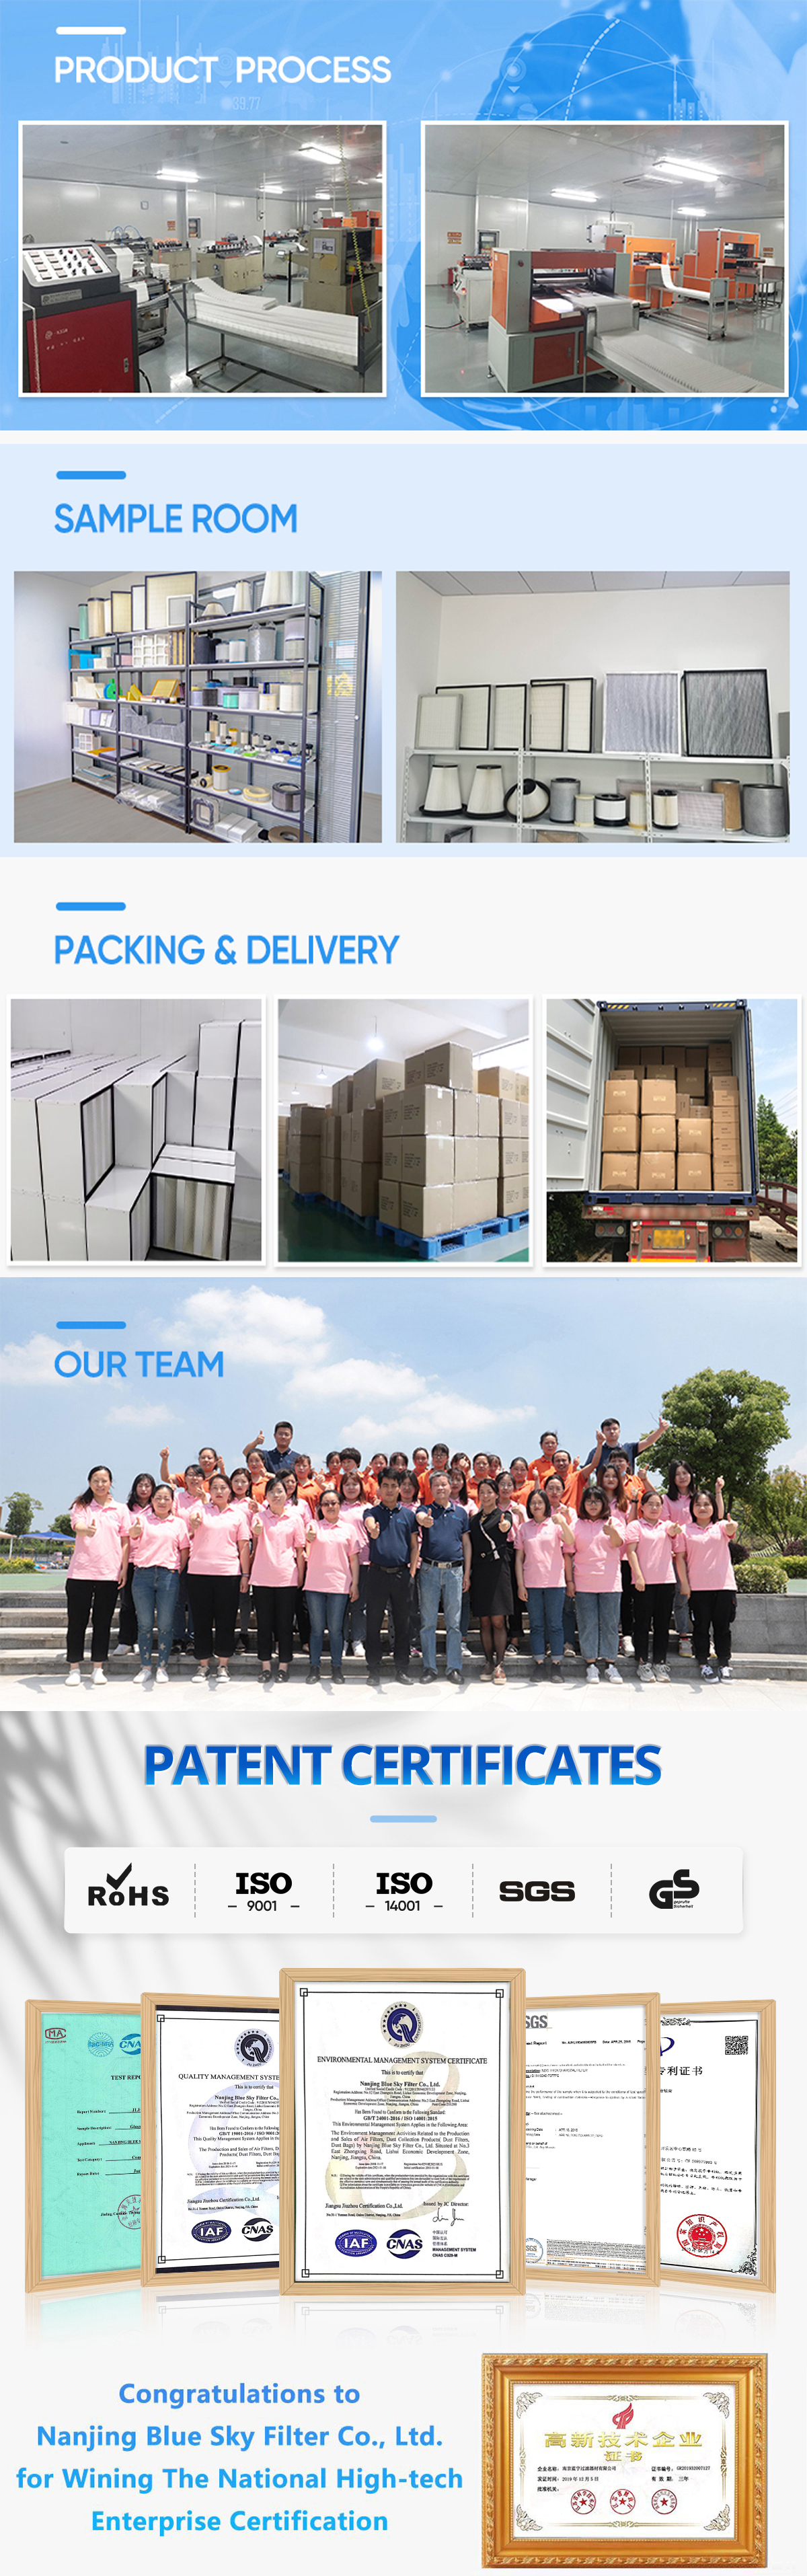 Нанкин Blue Sky Filter Co., Ltd.Профессиональный процесс и доставка